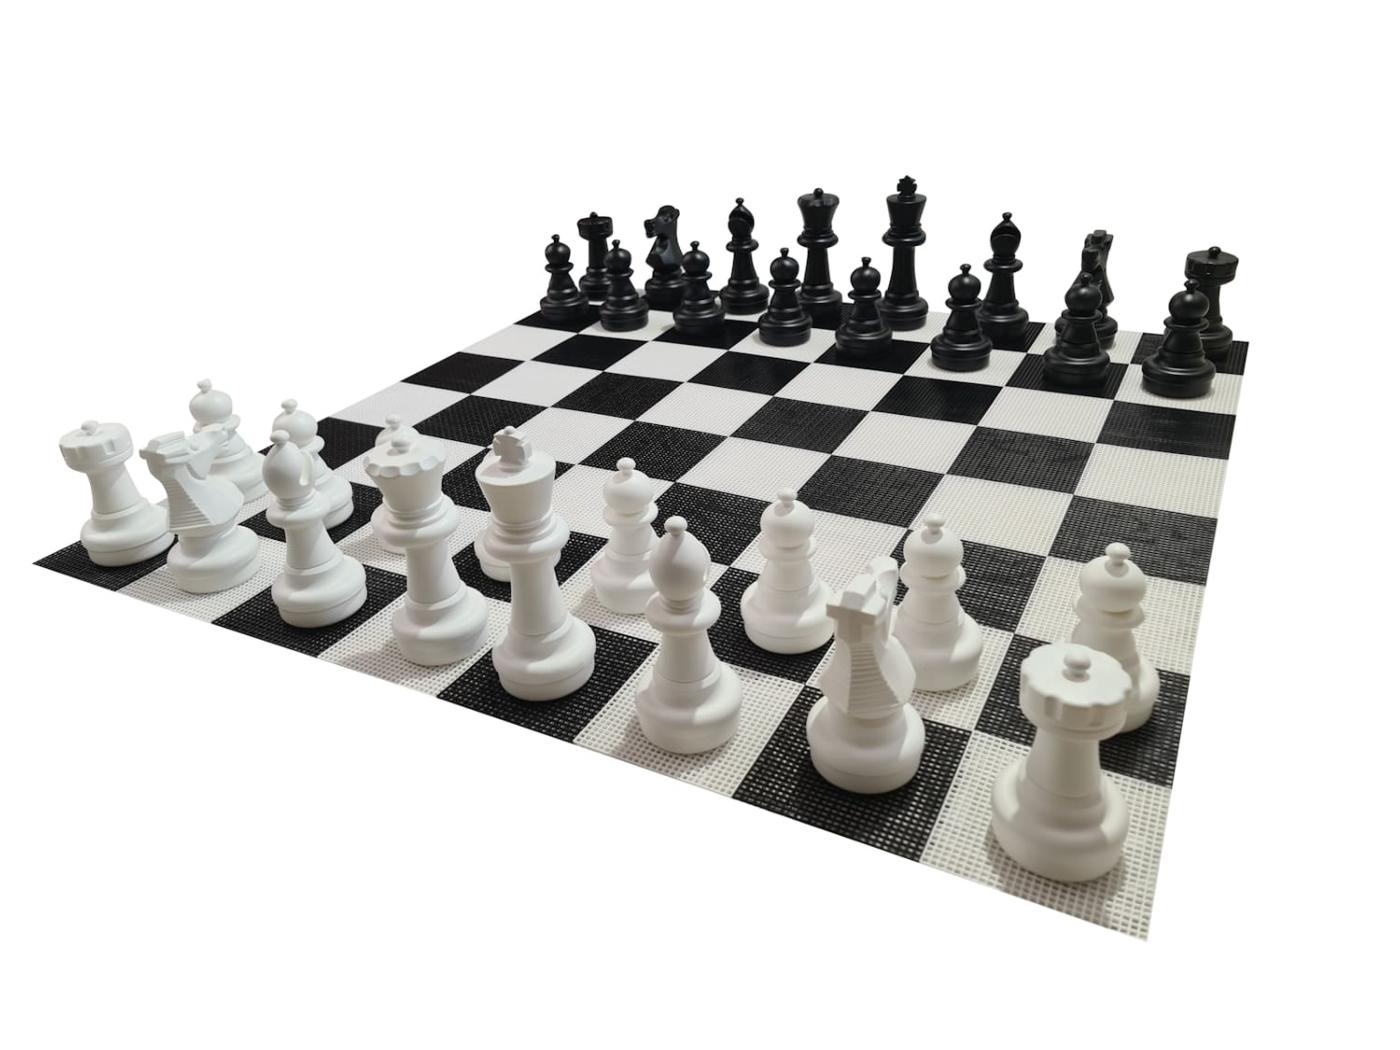 Joc d'escacs gegant amb tauler rígid gegant inclòs joc complet sobre tauler vista 2